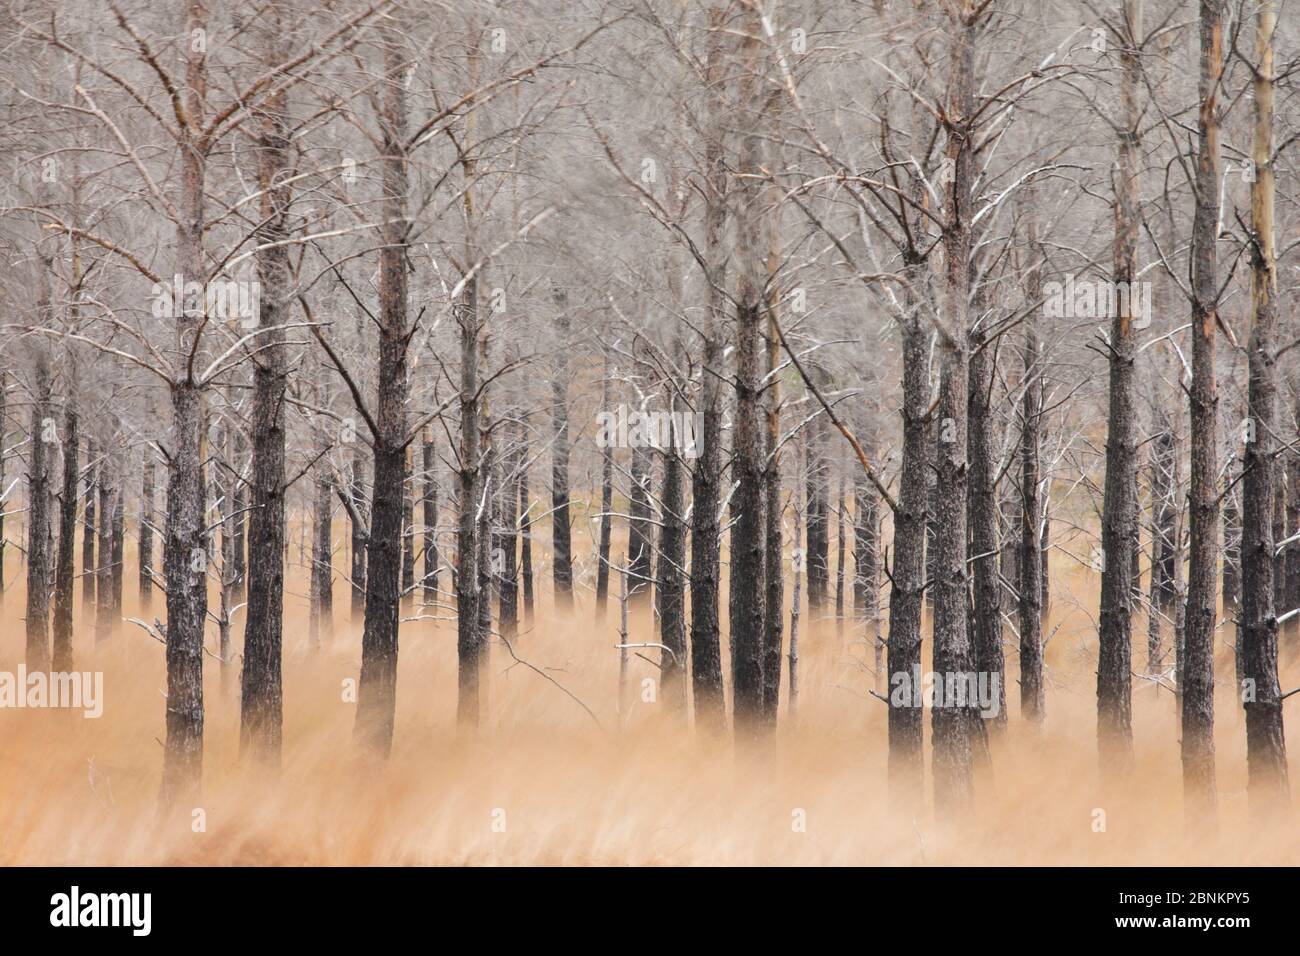 Bruciato di pino silvestre (Pinus sylvestris) bosco, soft focus shot, Glen Torridon, altopiani, Scozia, Regno Unito, novembre 2014. Foto Stock